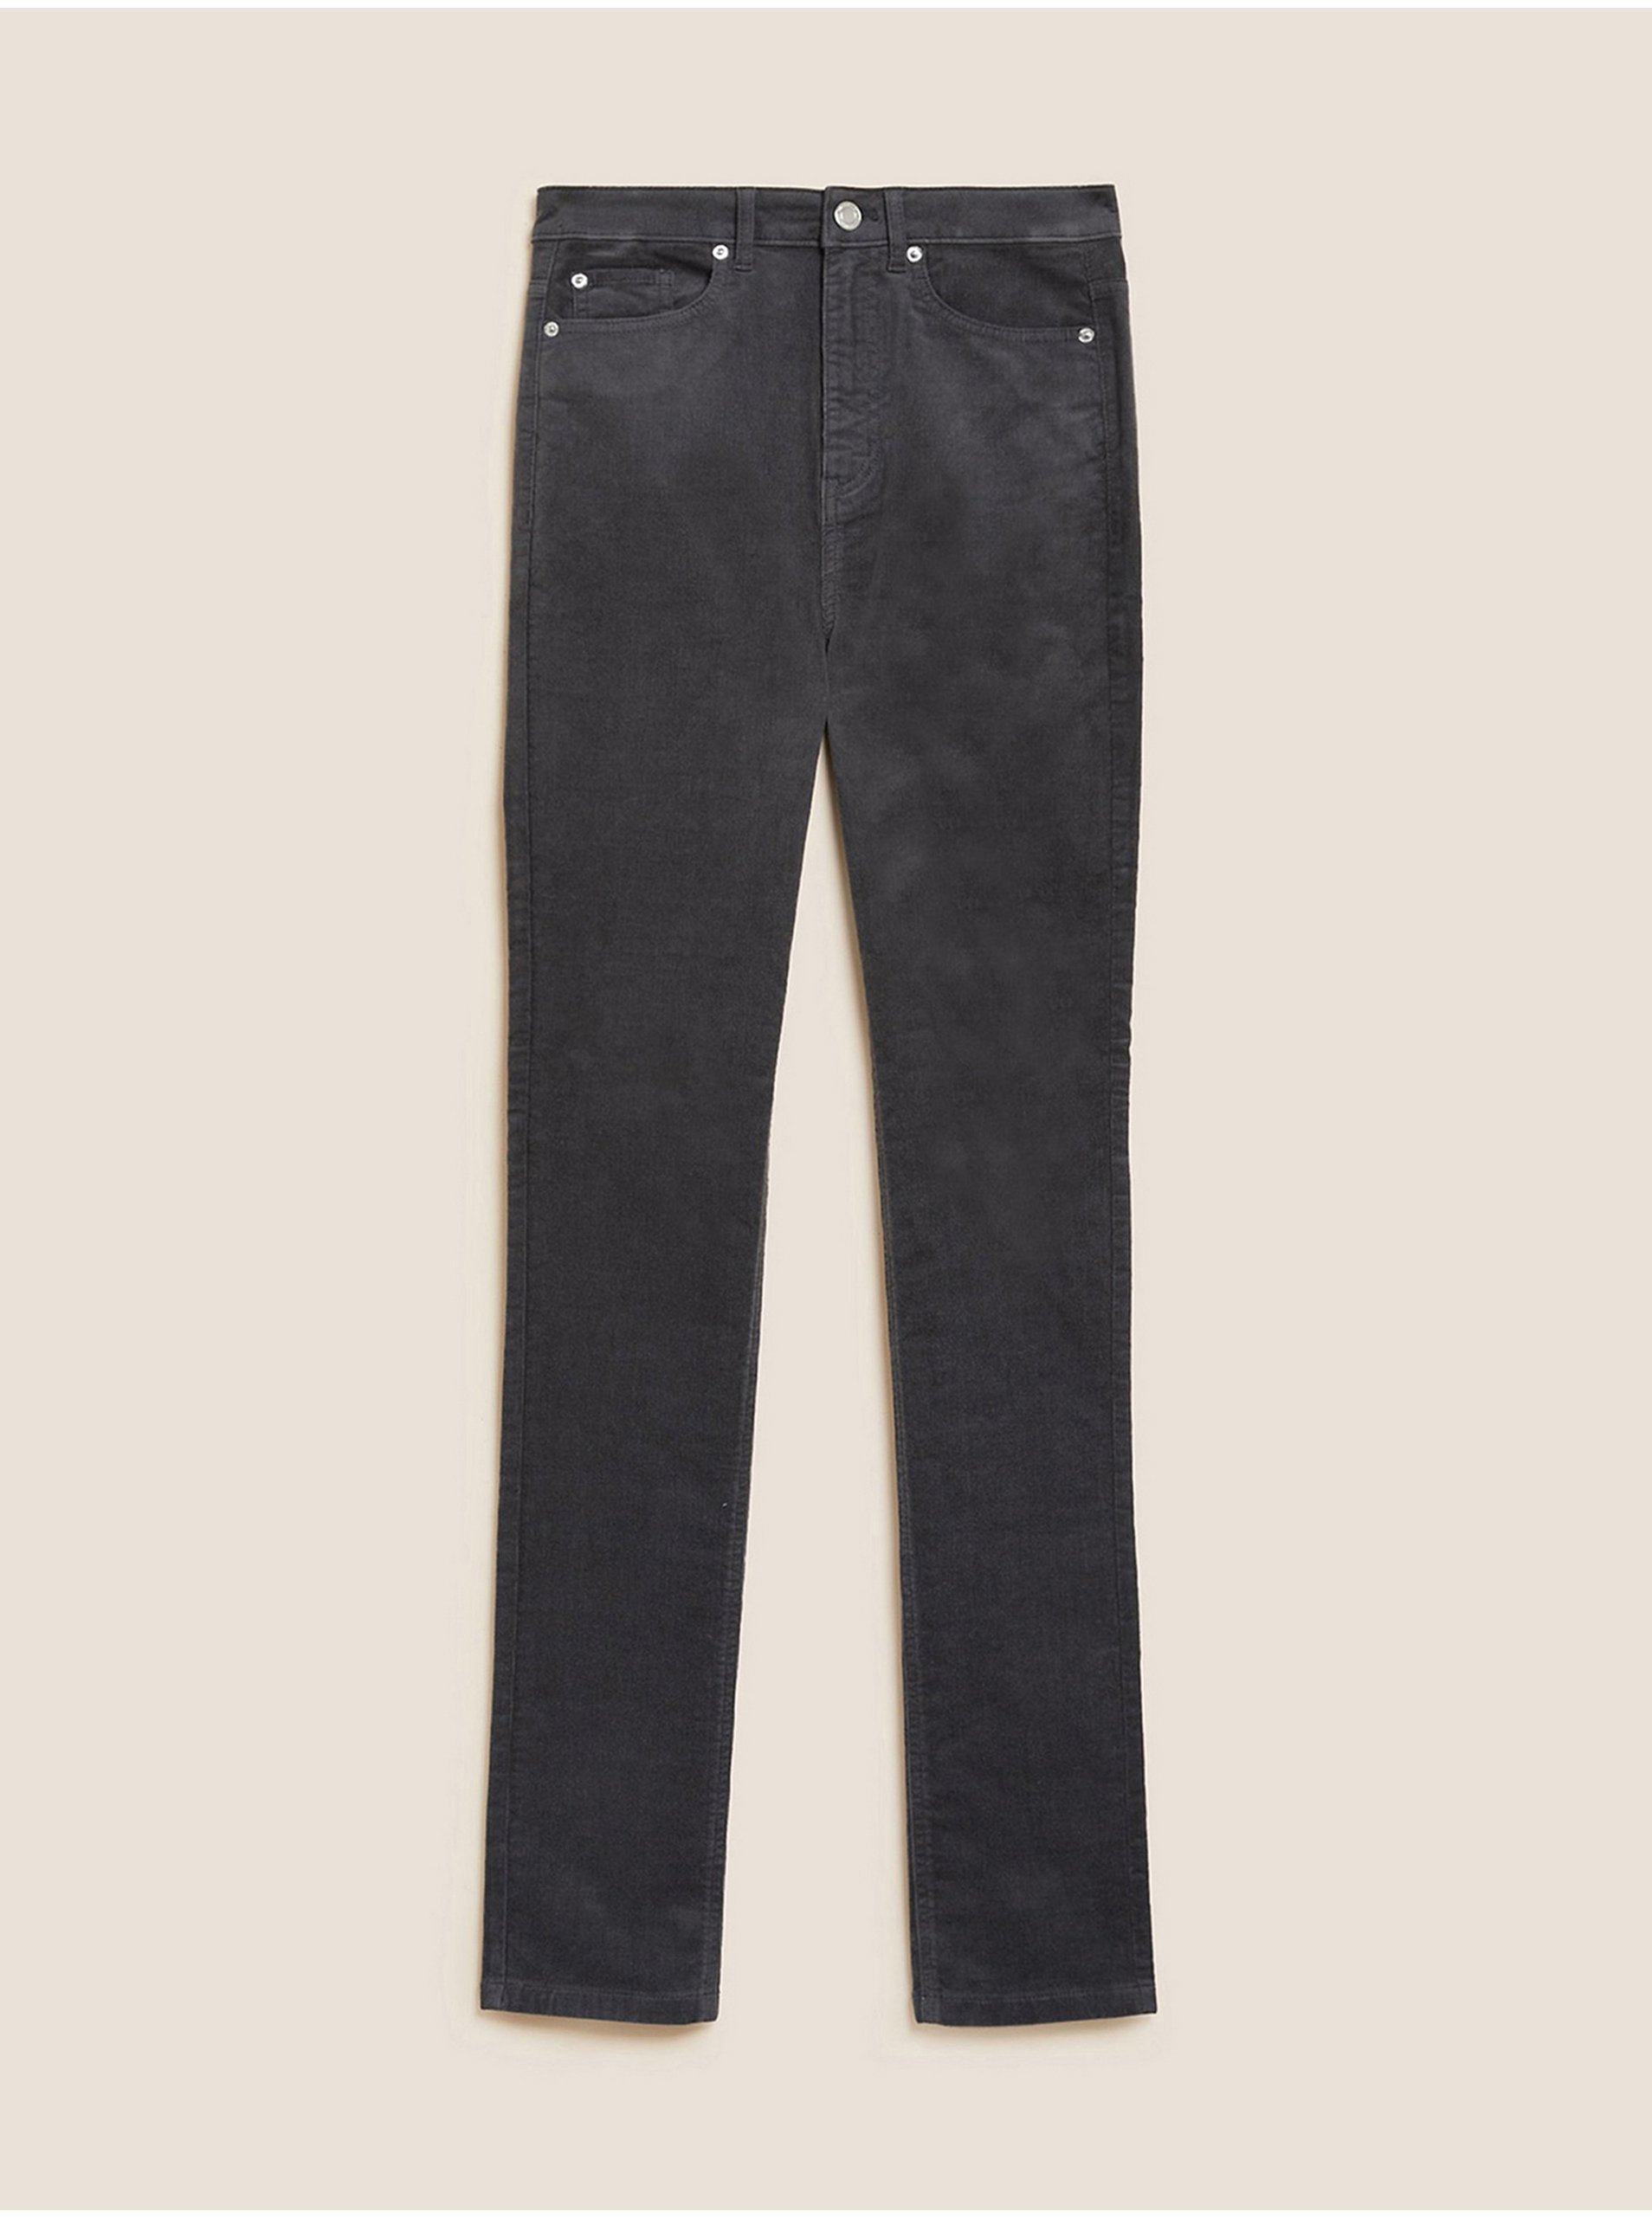 E-shop Tmavě šedé dámské manšestrové kalhoty Marks & Spencer Sienna